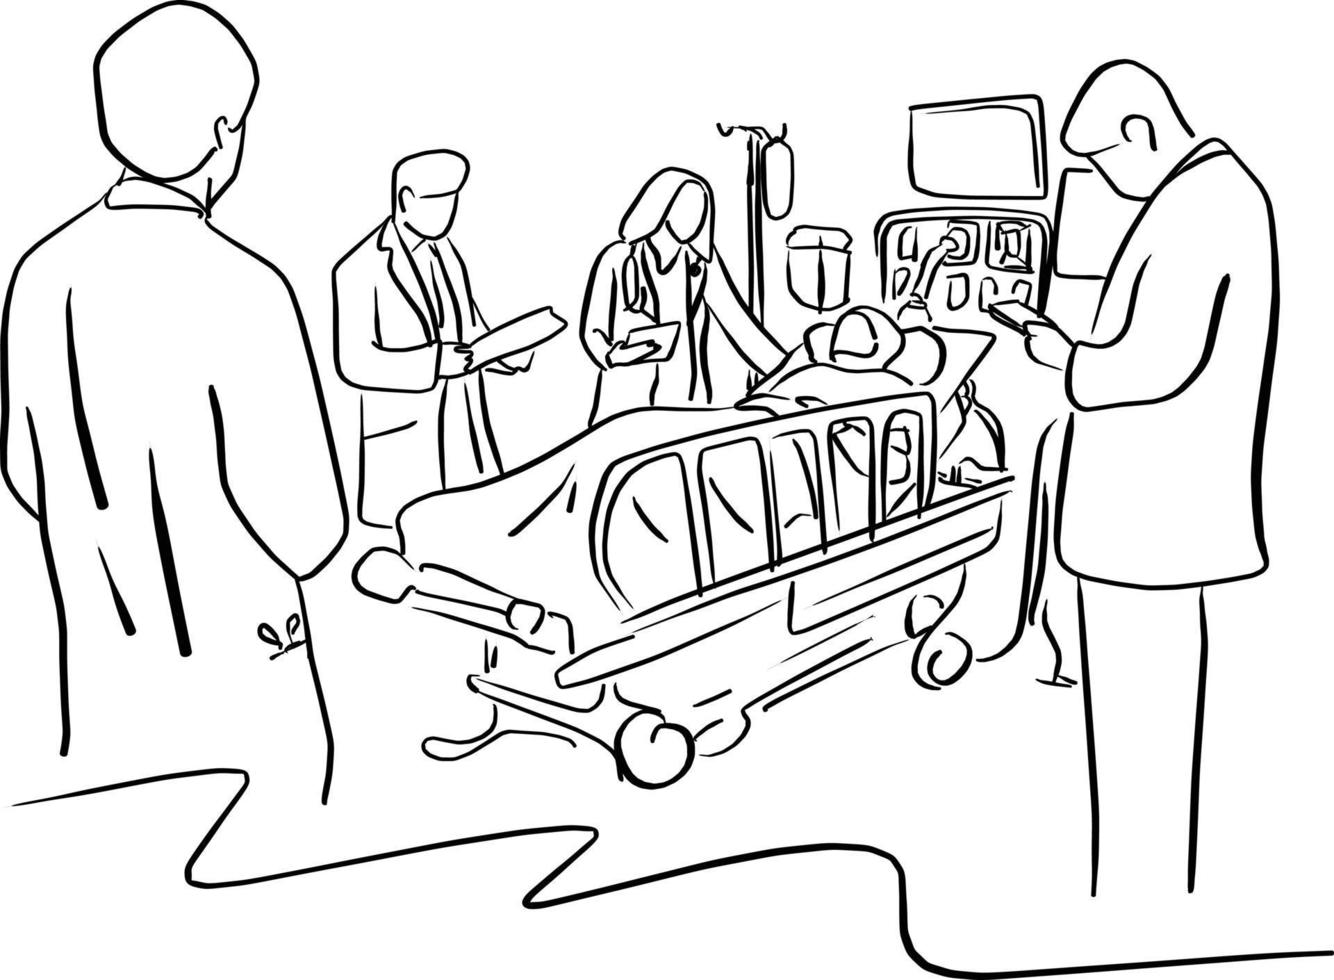 quatro médicos cuidam de um paciente na cama no hospital vetor